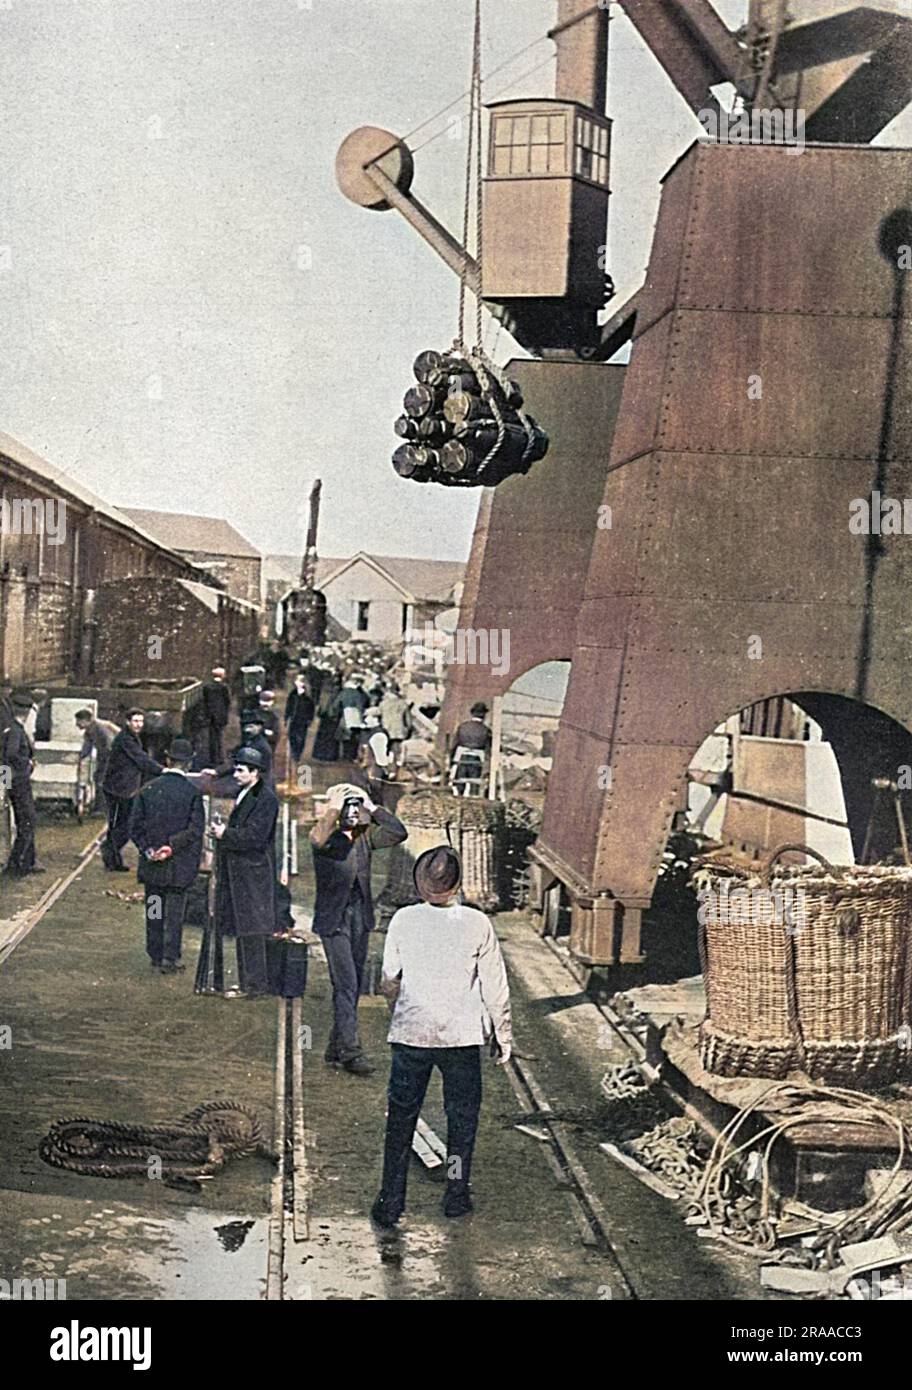 Eine Werftszene während des Ersten Weltkriegs, in der Munition an Bord eines Schlachtschiff gehisst wurde. Datum: 1915 Stockfoto